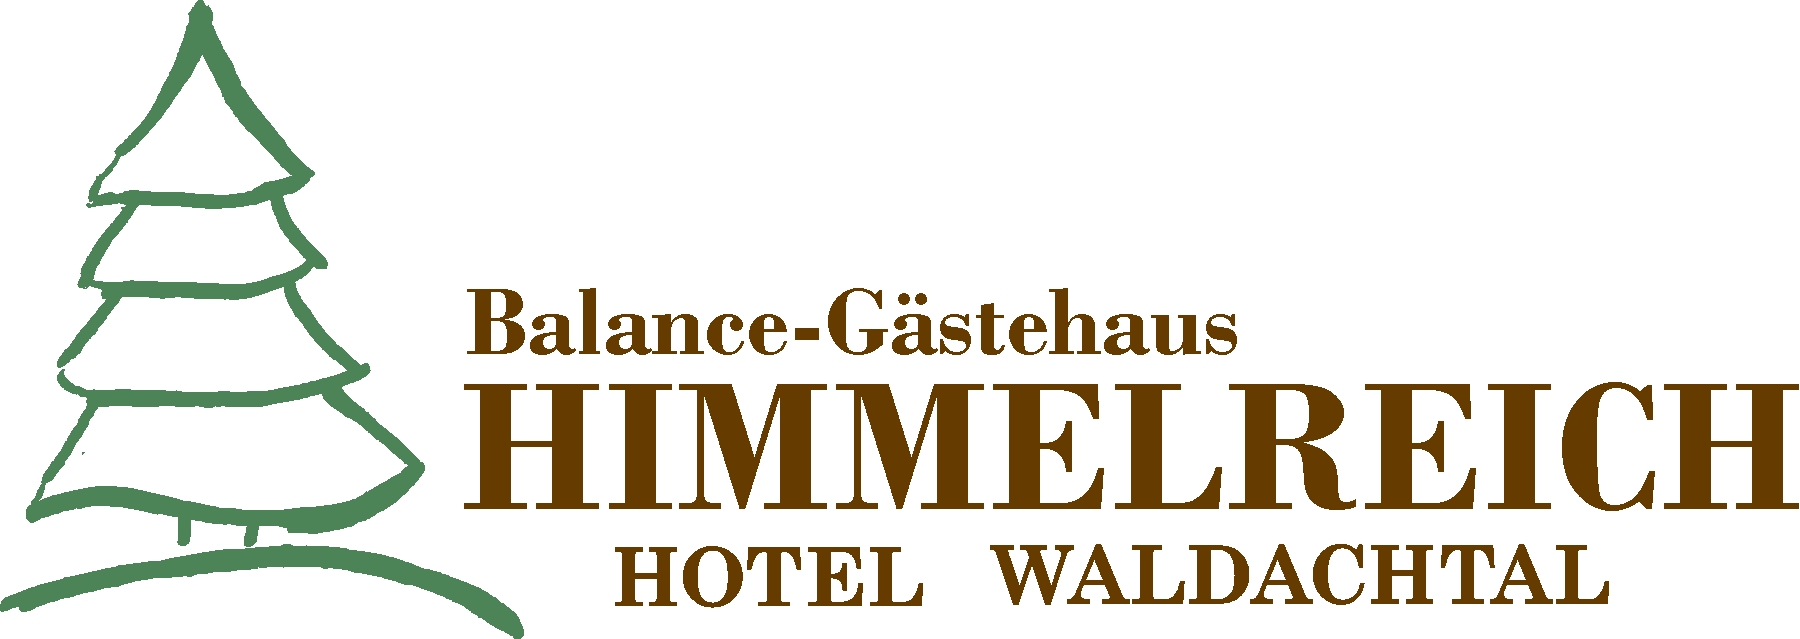 Balance-Gästehaus Himmelreich im Hotel Waldachtal, Nordschwarzwald